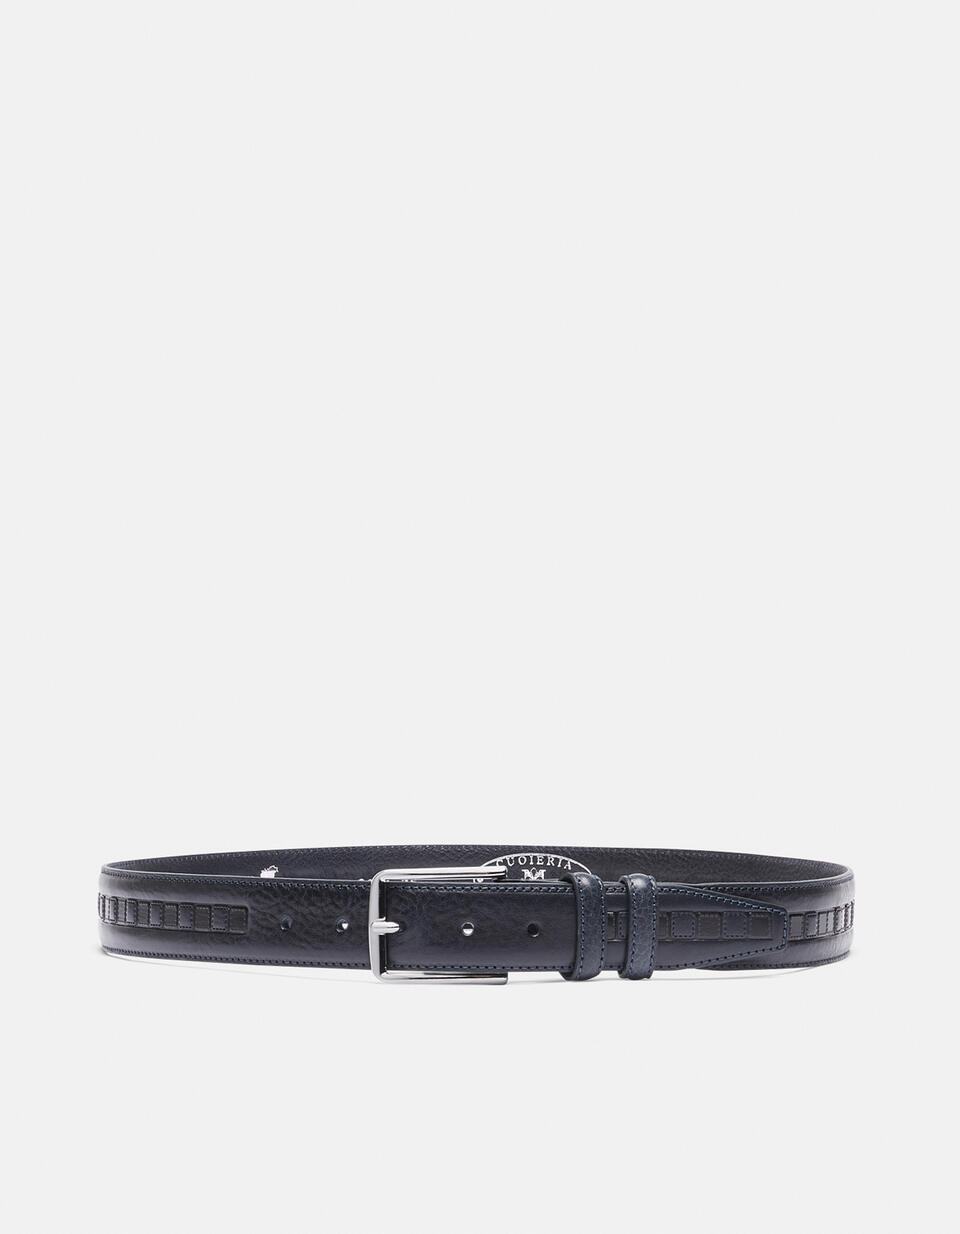 Cintura in cuoio lavorato di altezza 3,5 - CINTURE UOMO | CINTURE BLU - CINTURE UOMO | CINTURECuoieria Fiorentina